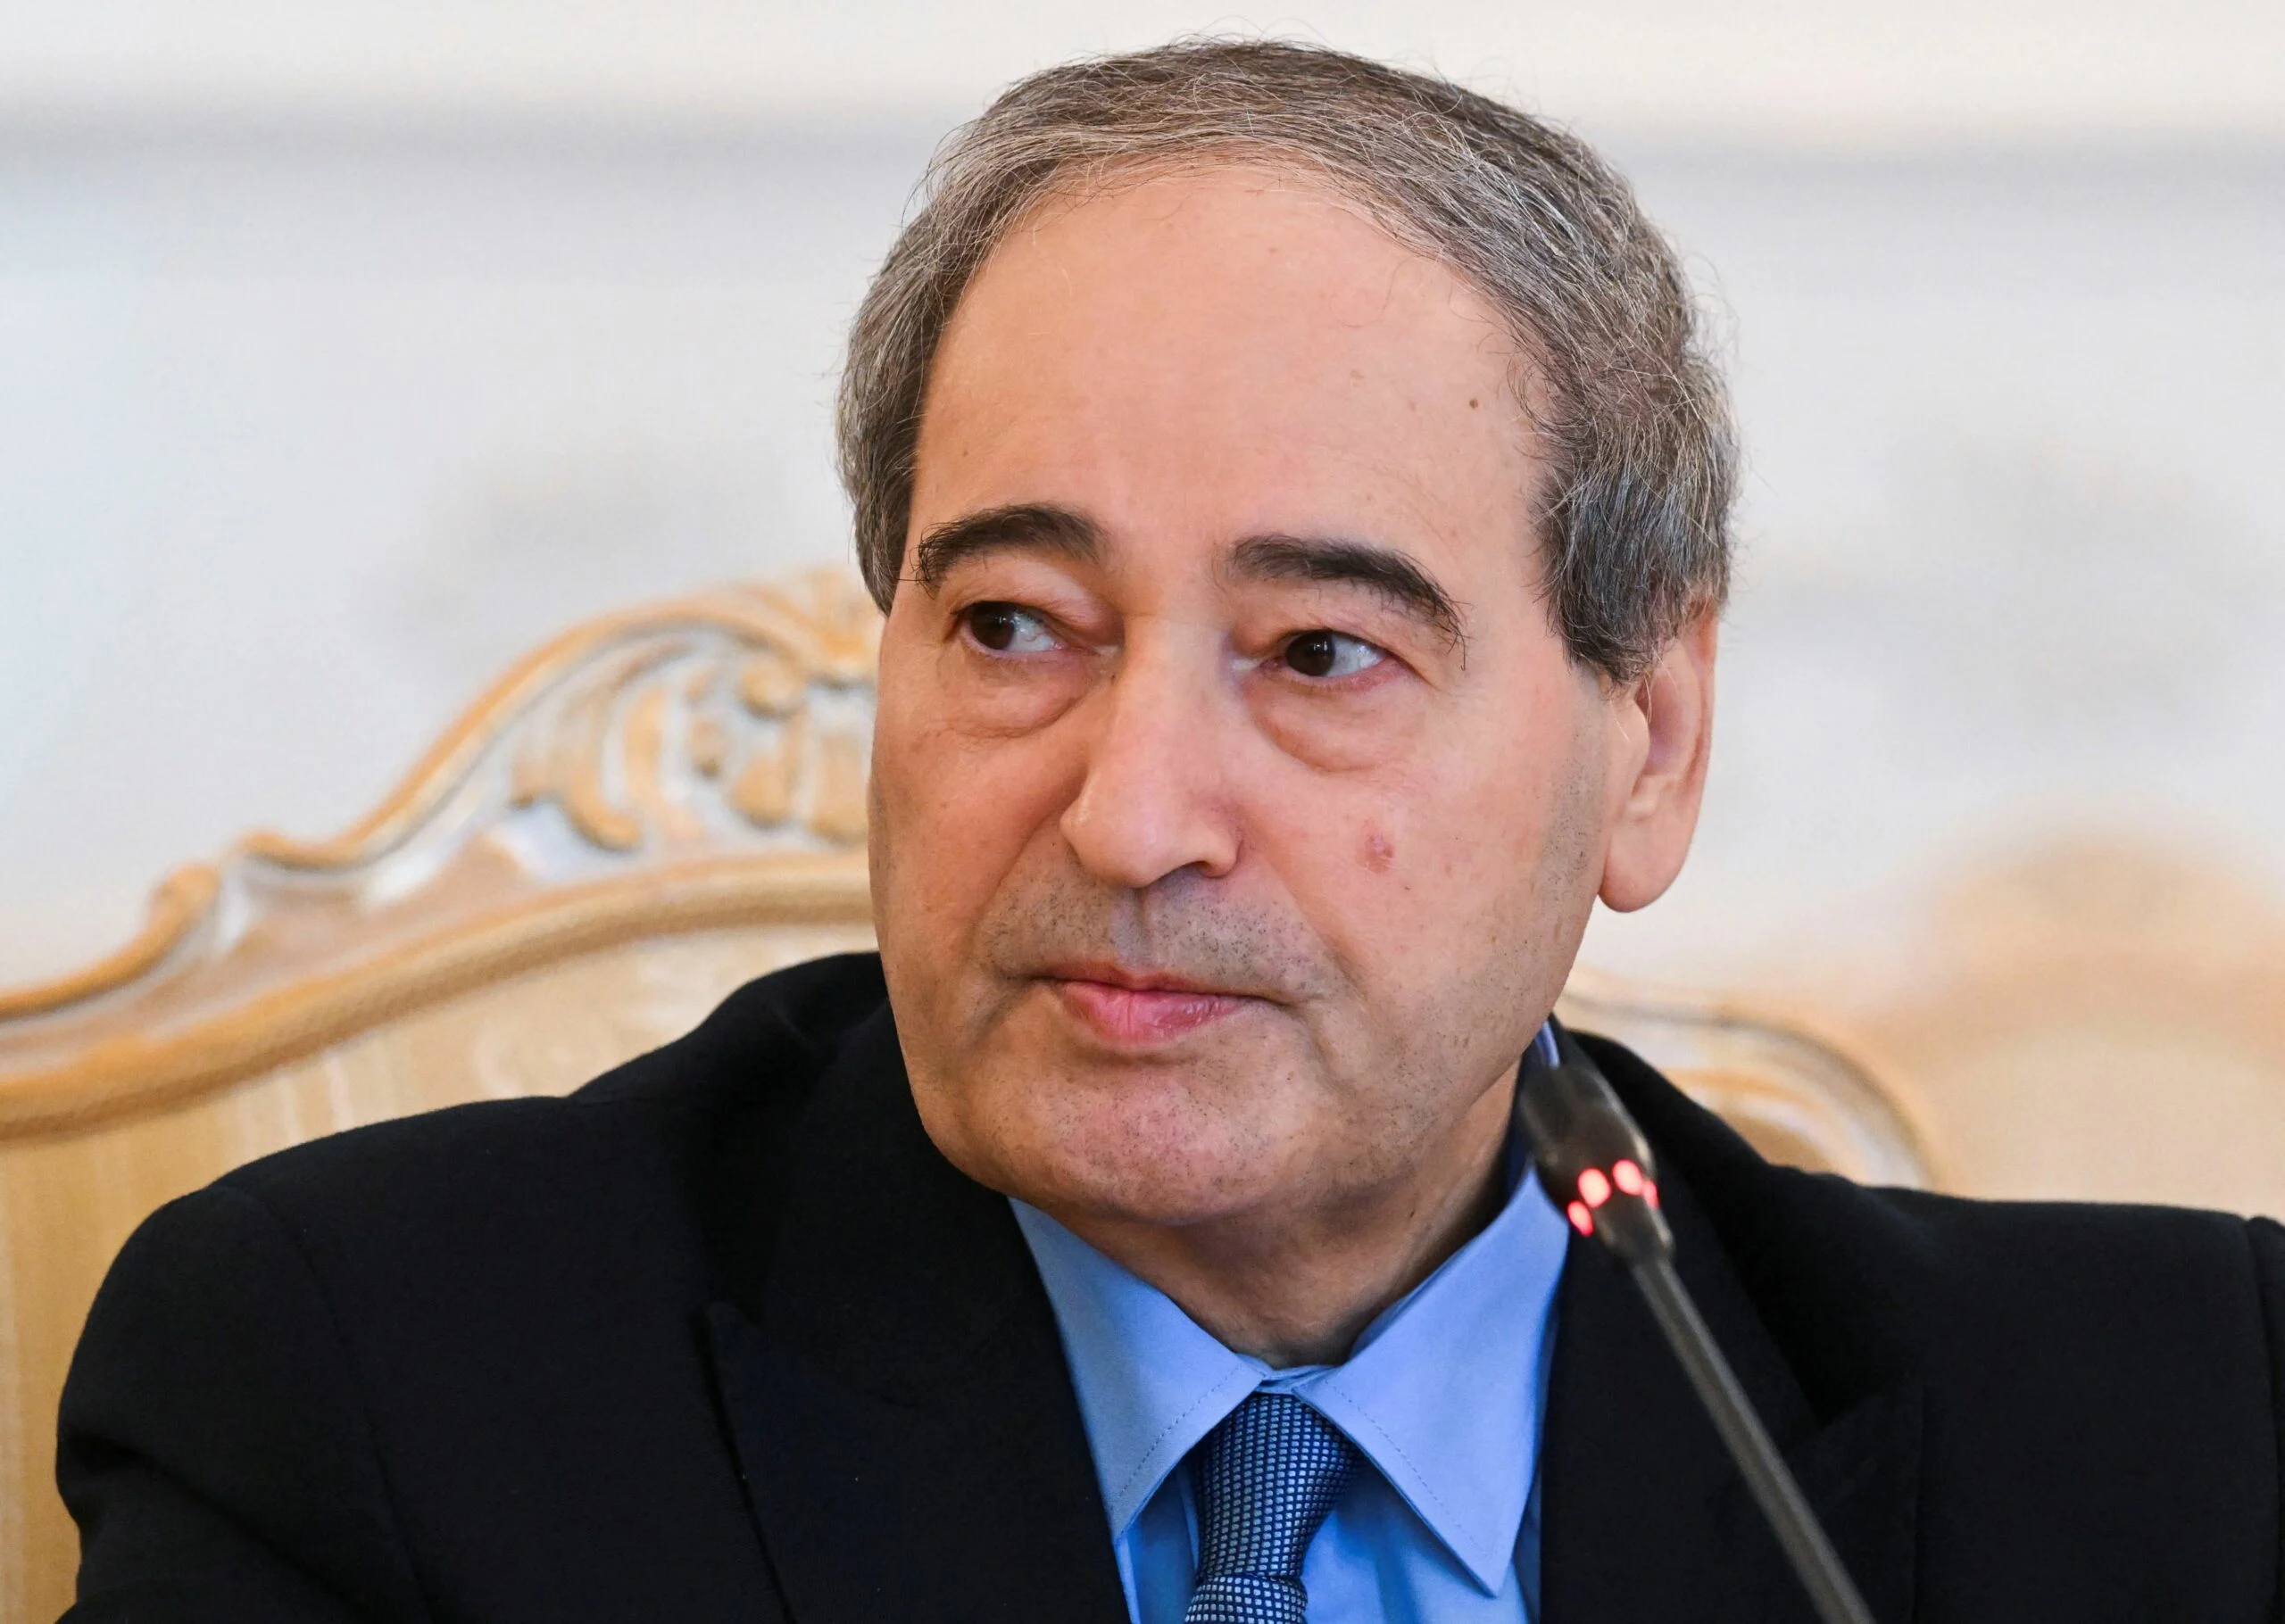 פייסל אל-מקדאד, שר החוץ הסורי, סורי